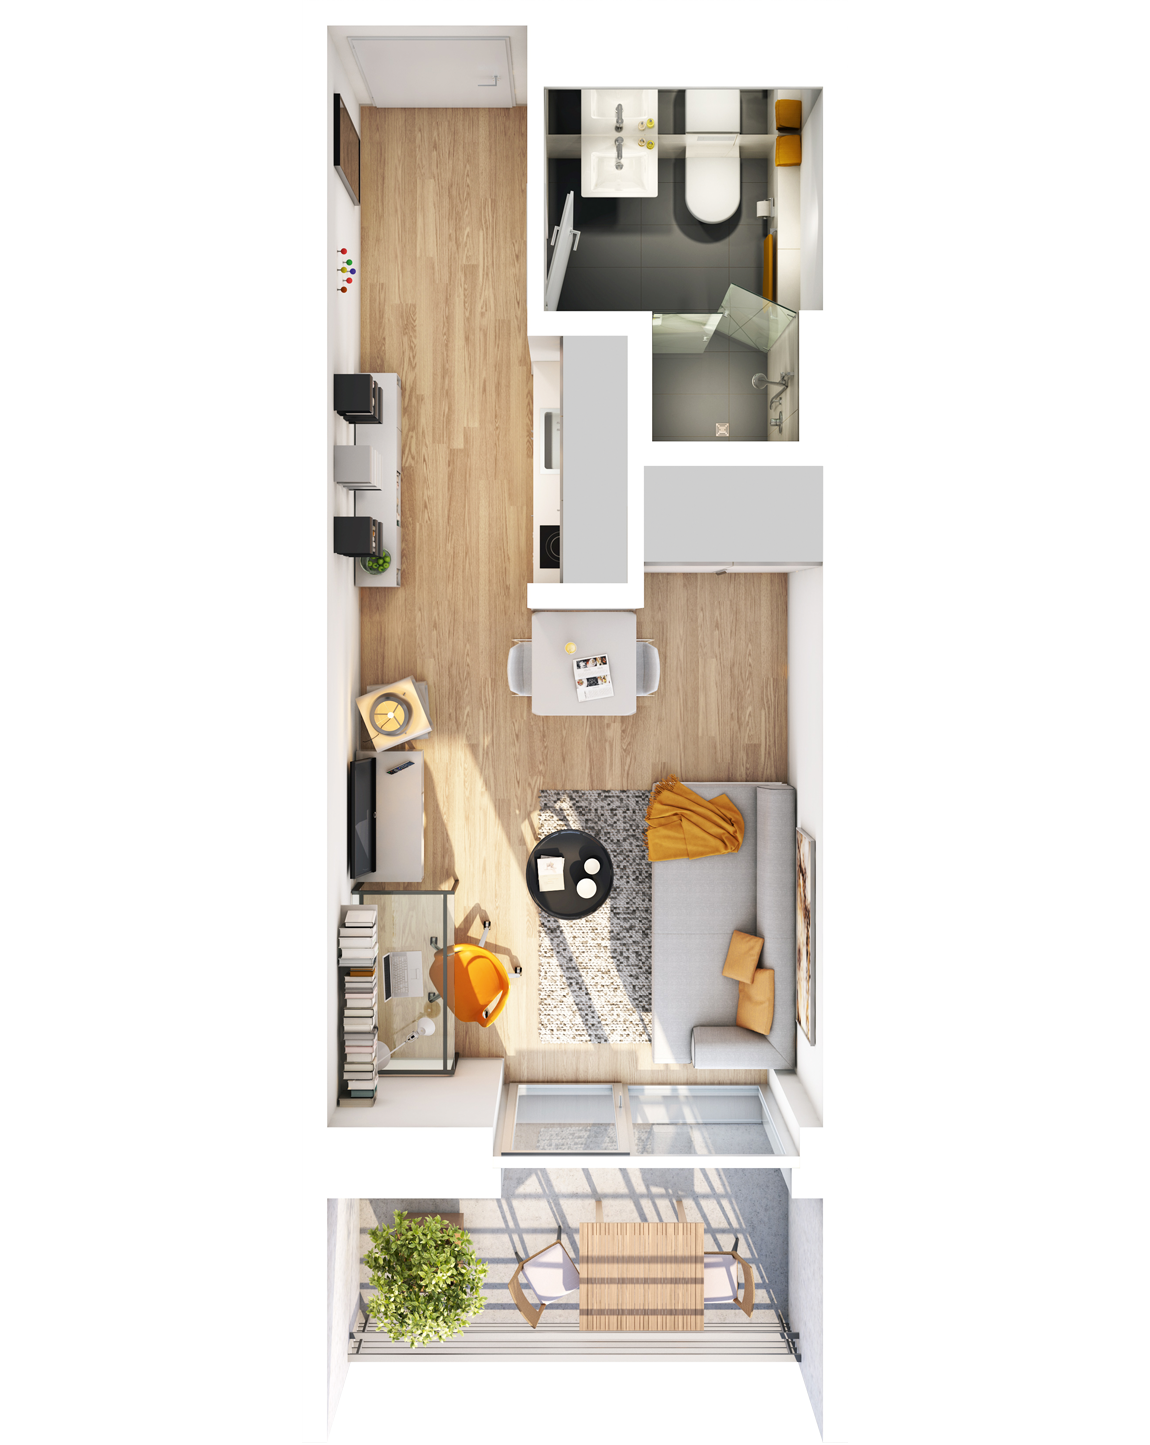 Visualisierung Beispiel 1-Zimmer-Wohnung Typ A mit Bad, Küchenzeile, Wohnbereich und Balkon (spiegelverkehrt) im studiosus 5 Apartmenthaus in Augsburg